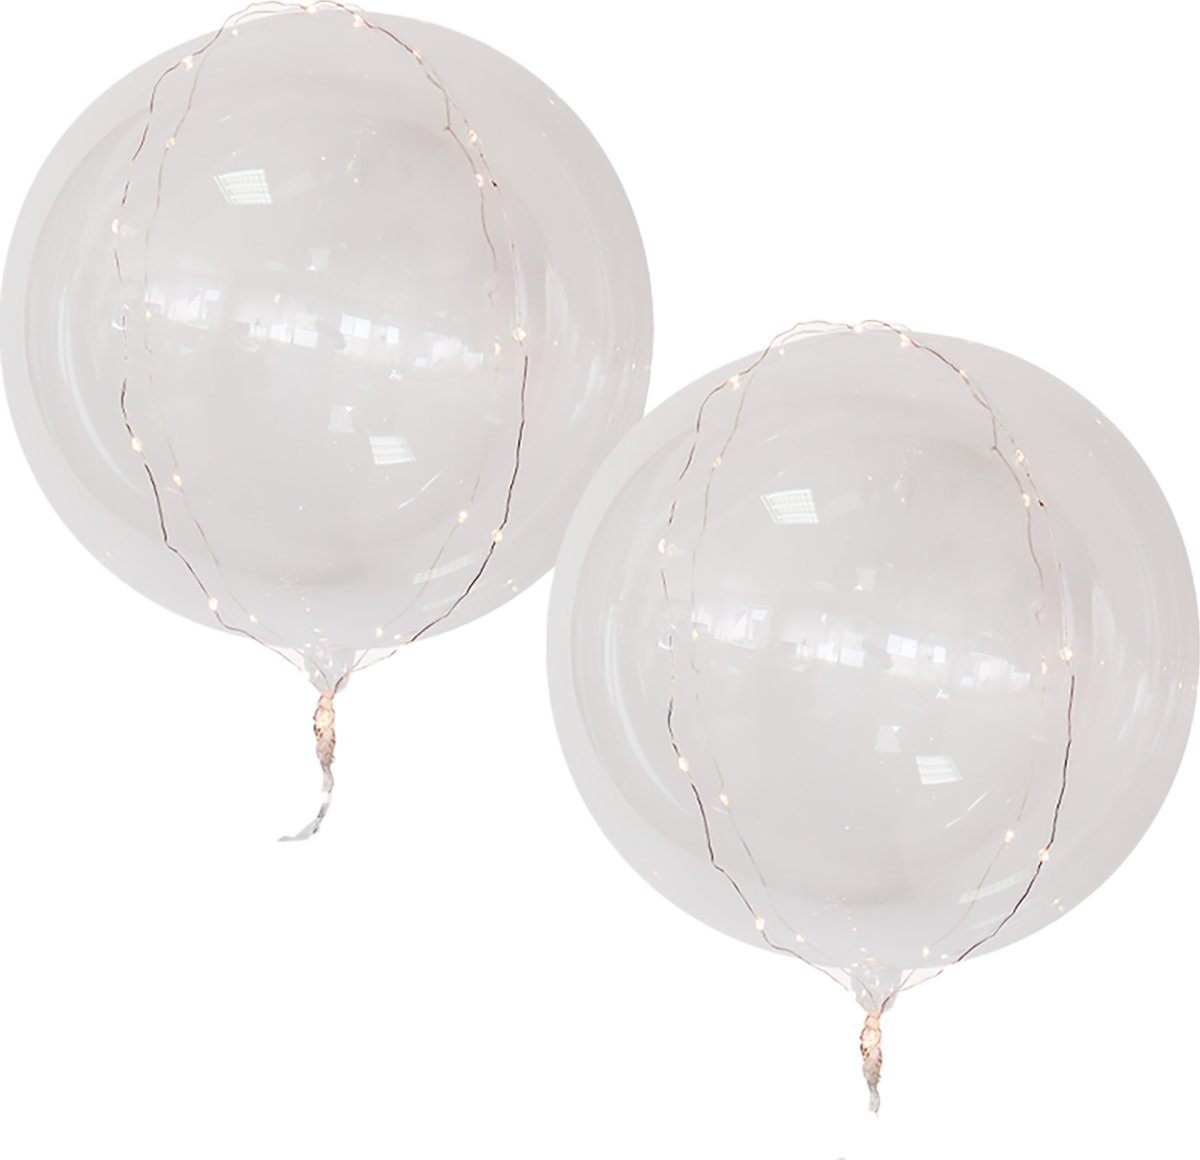 Ballon med LED, hvidt lys, 50 cm, 2 stk.